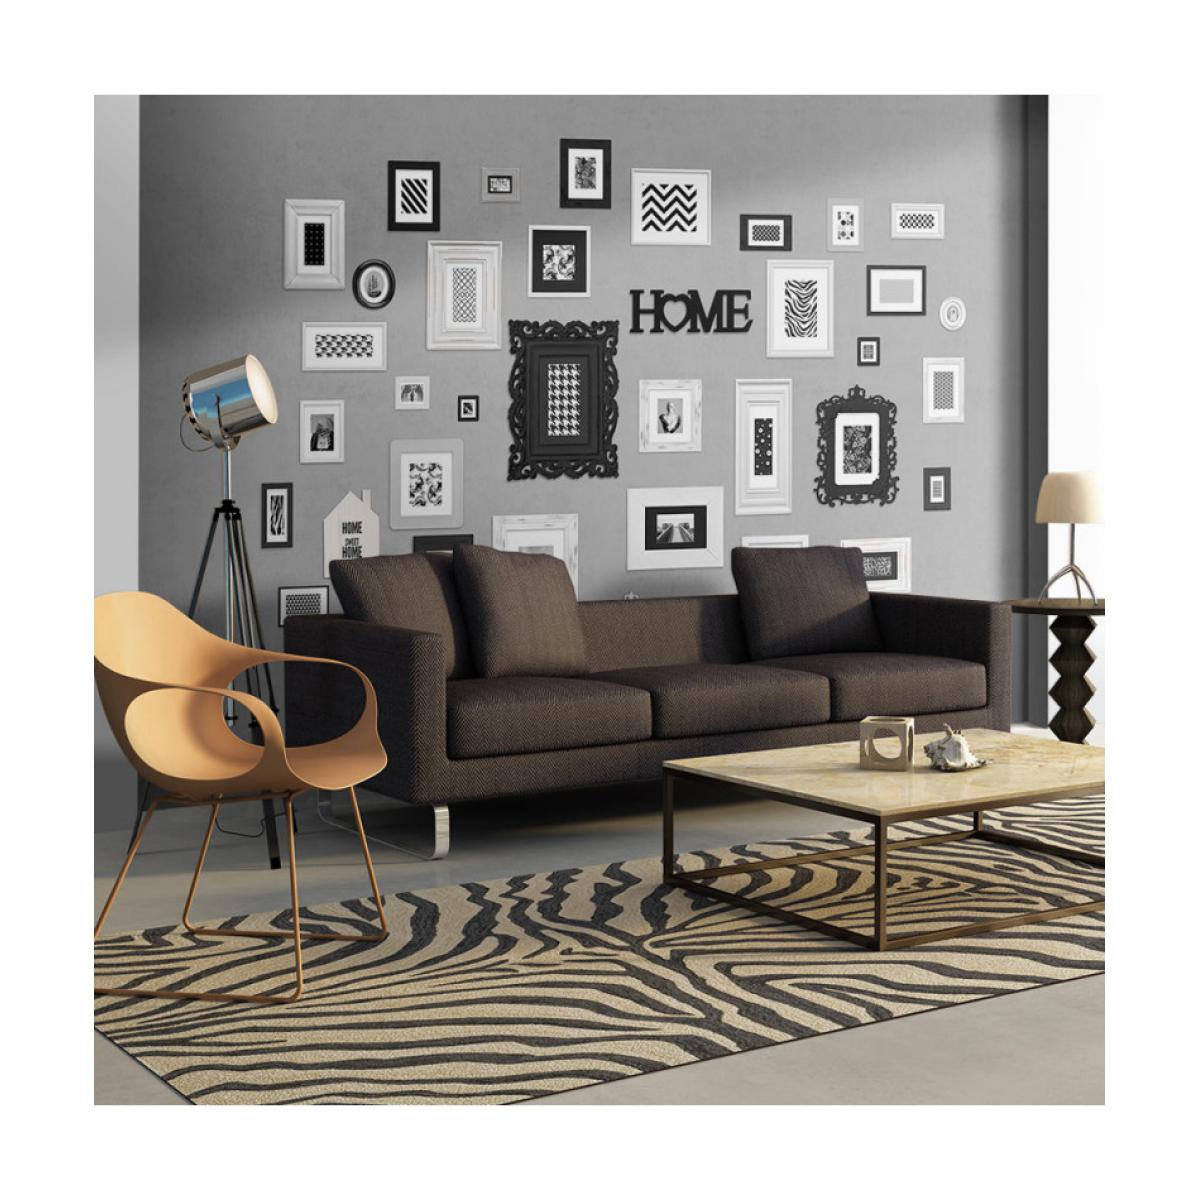 Artgeist - Papier peint - Wall full of frames 100x70 - Papier peint